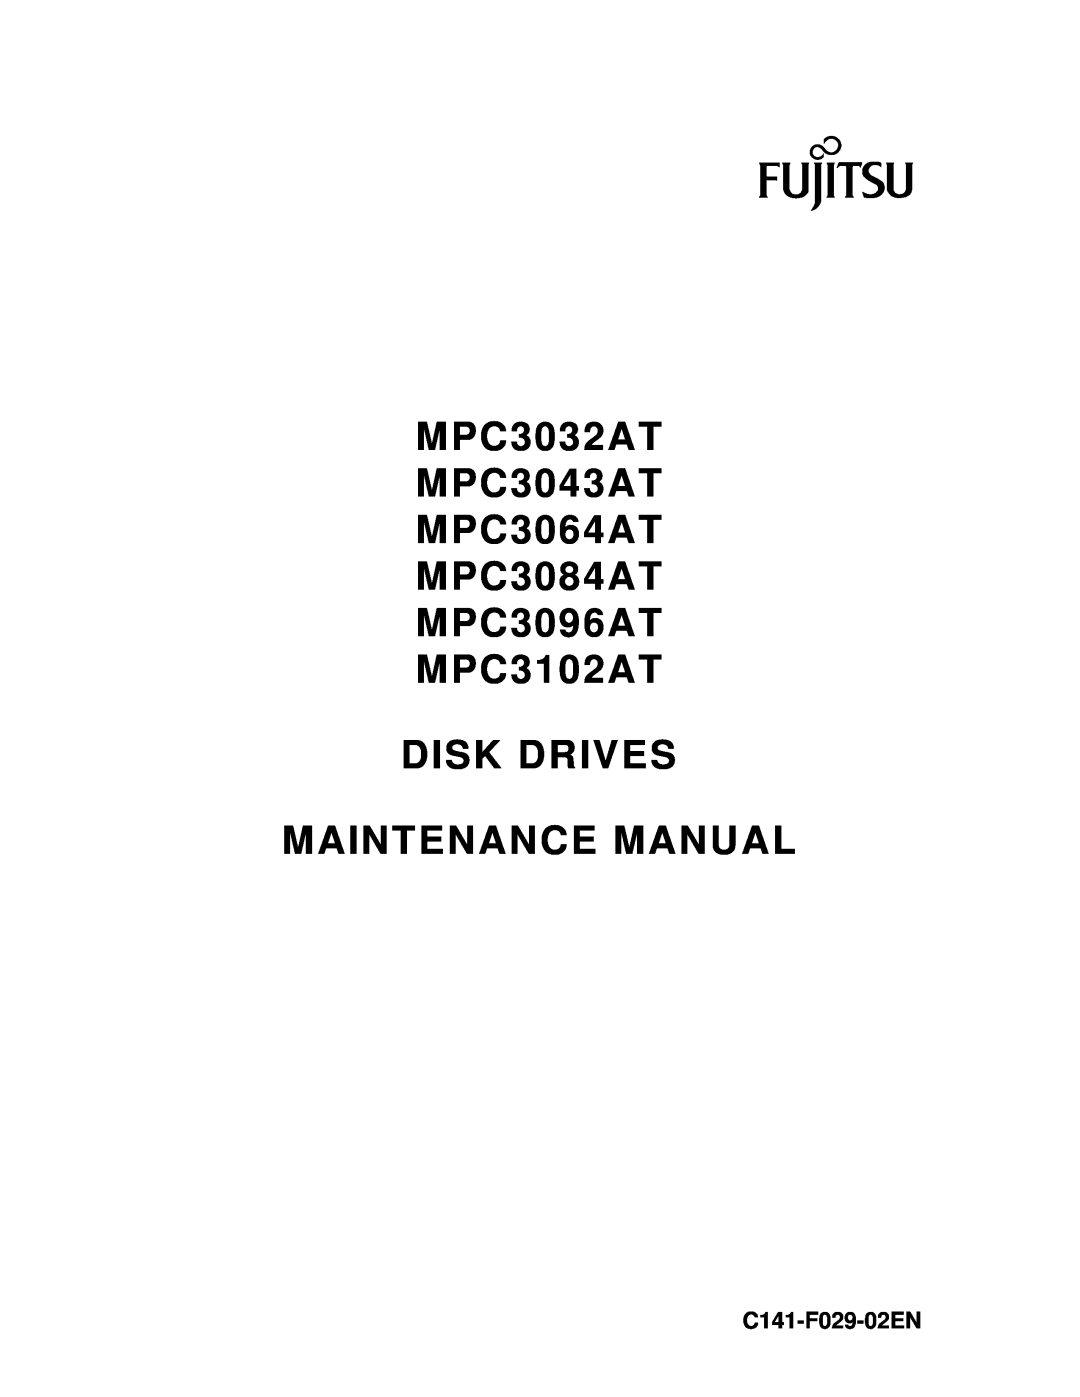 Fujitsu manual MPC3032AT MPC3043AT MPC3064AT MPC3084AT MPC3096AT MPC3102AT, Disk Drives Maintenance Manual 